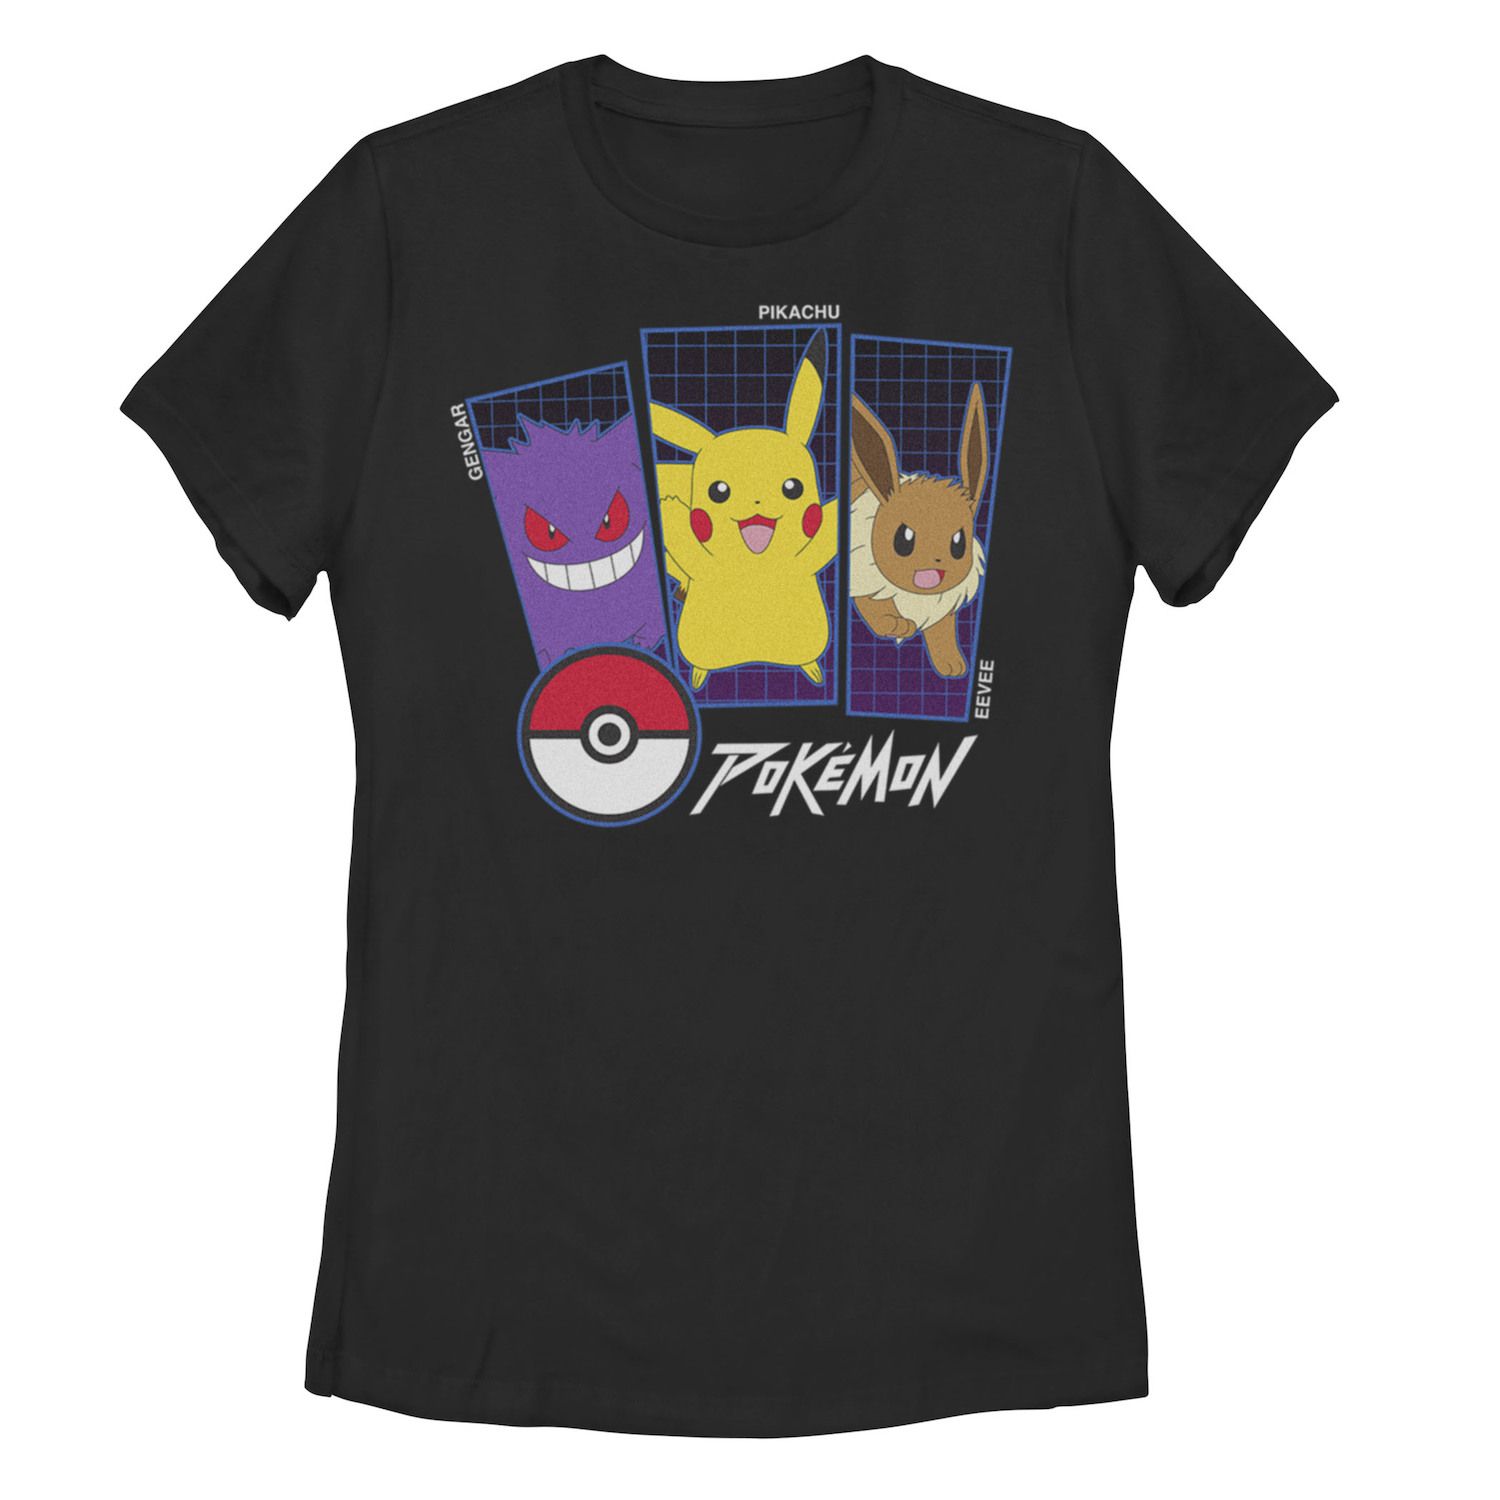 Детская футболка с графическими вставками Pokemon Gengar, Pikachu и Eevee Pokemon